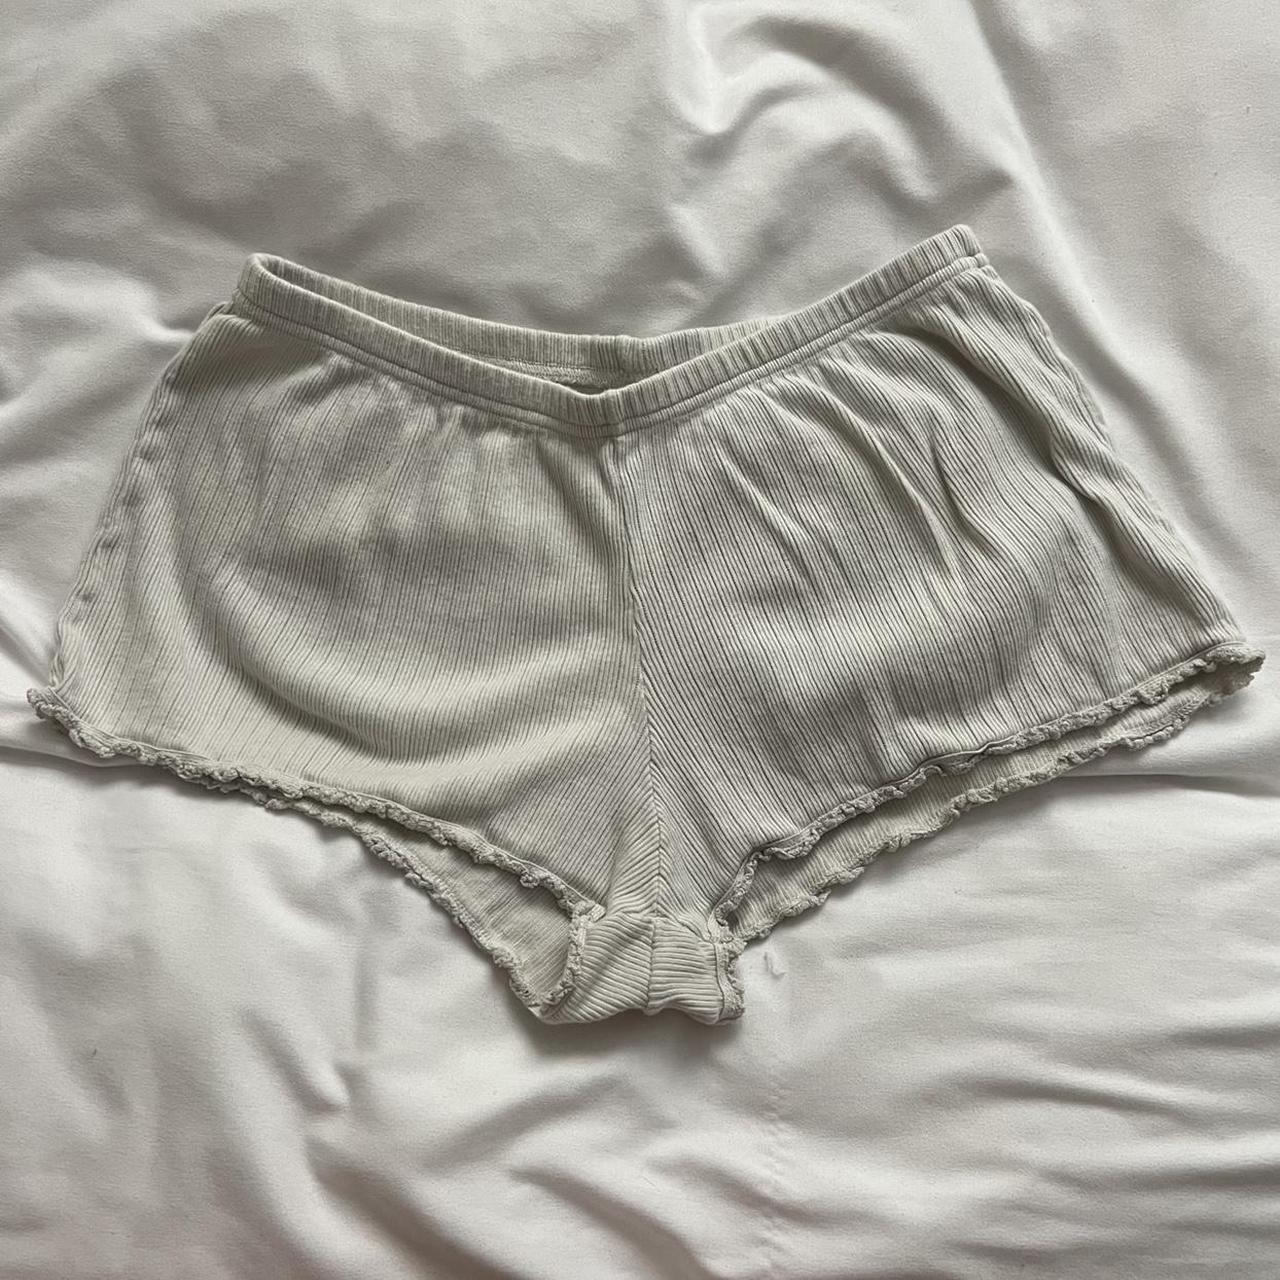 Brandy Melville lace lace undies - Depop